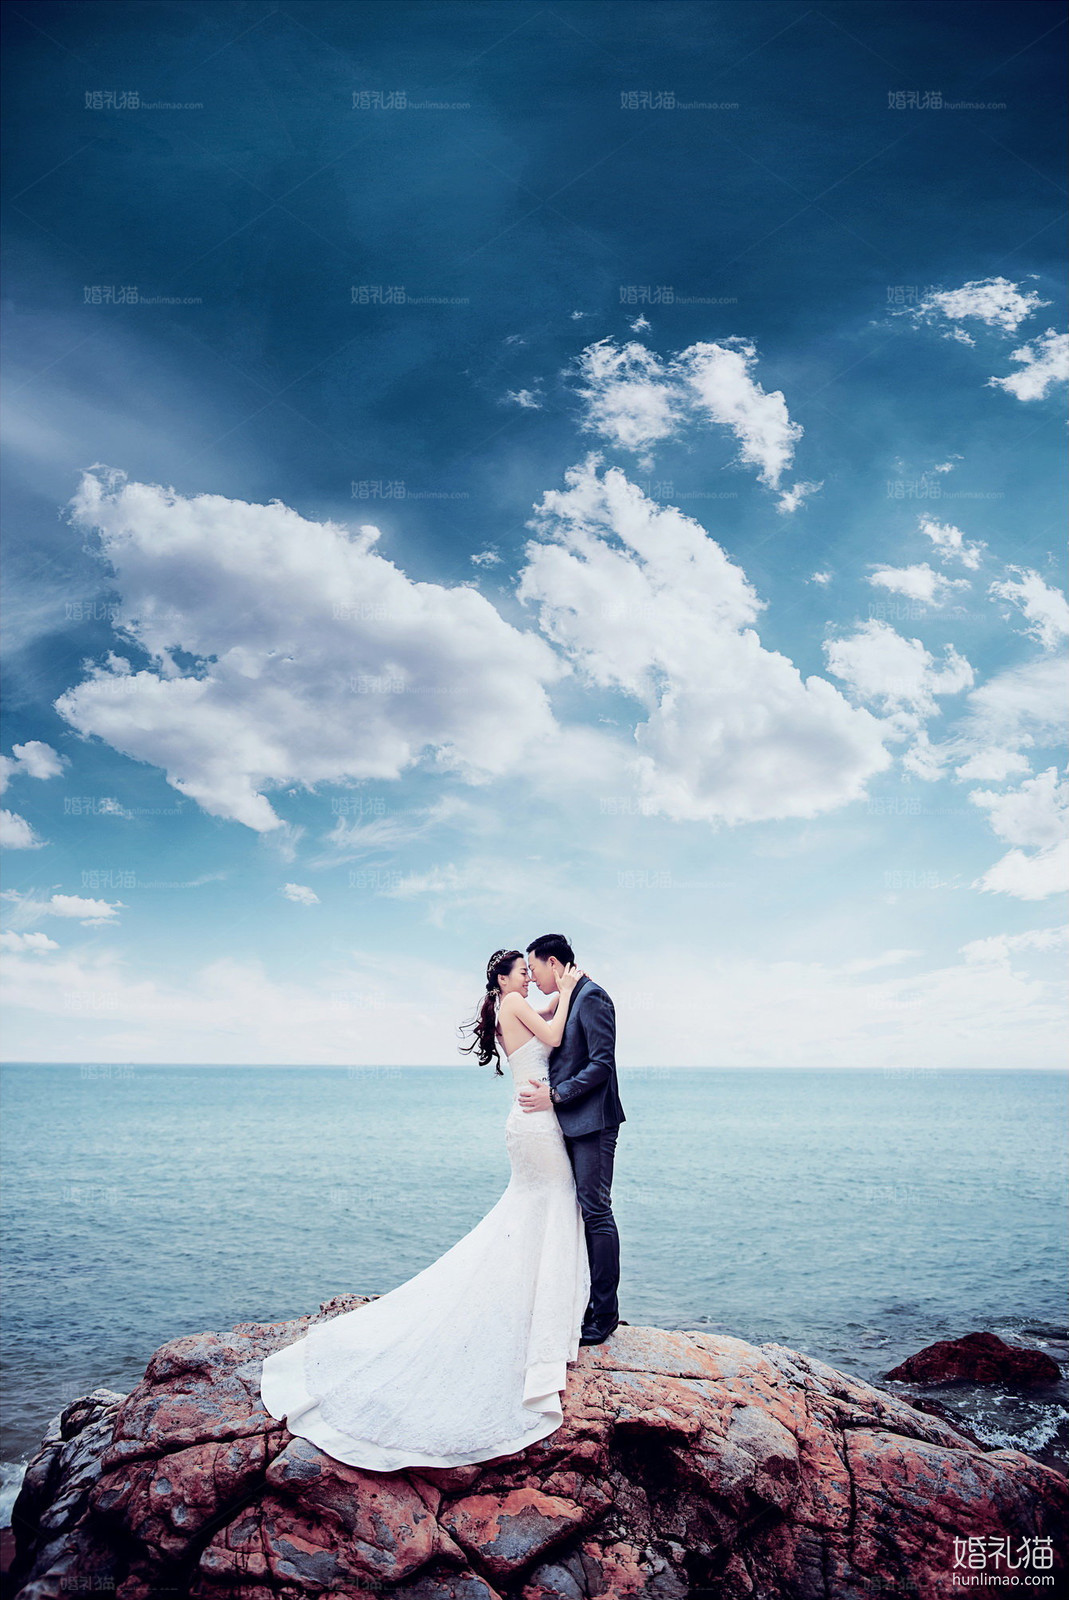 海景结婚照,[海景, 礁石],阳江婚纱照,婚纱照图片